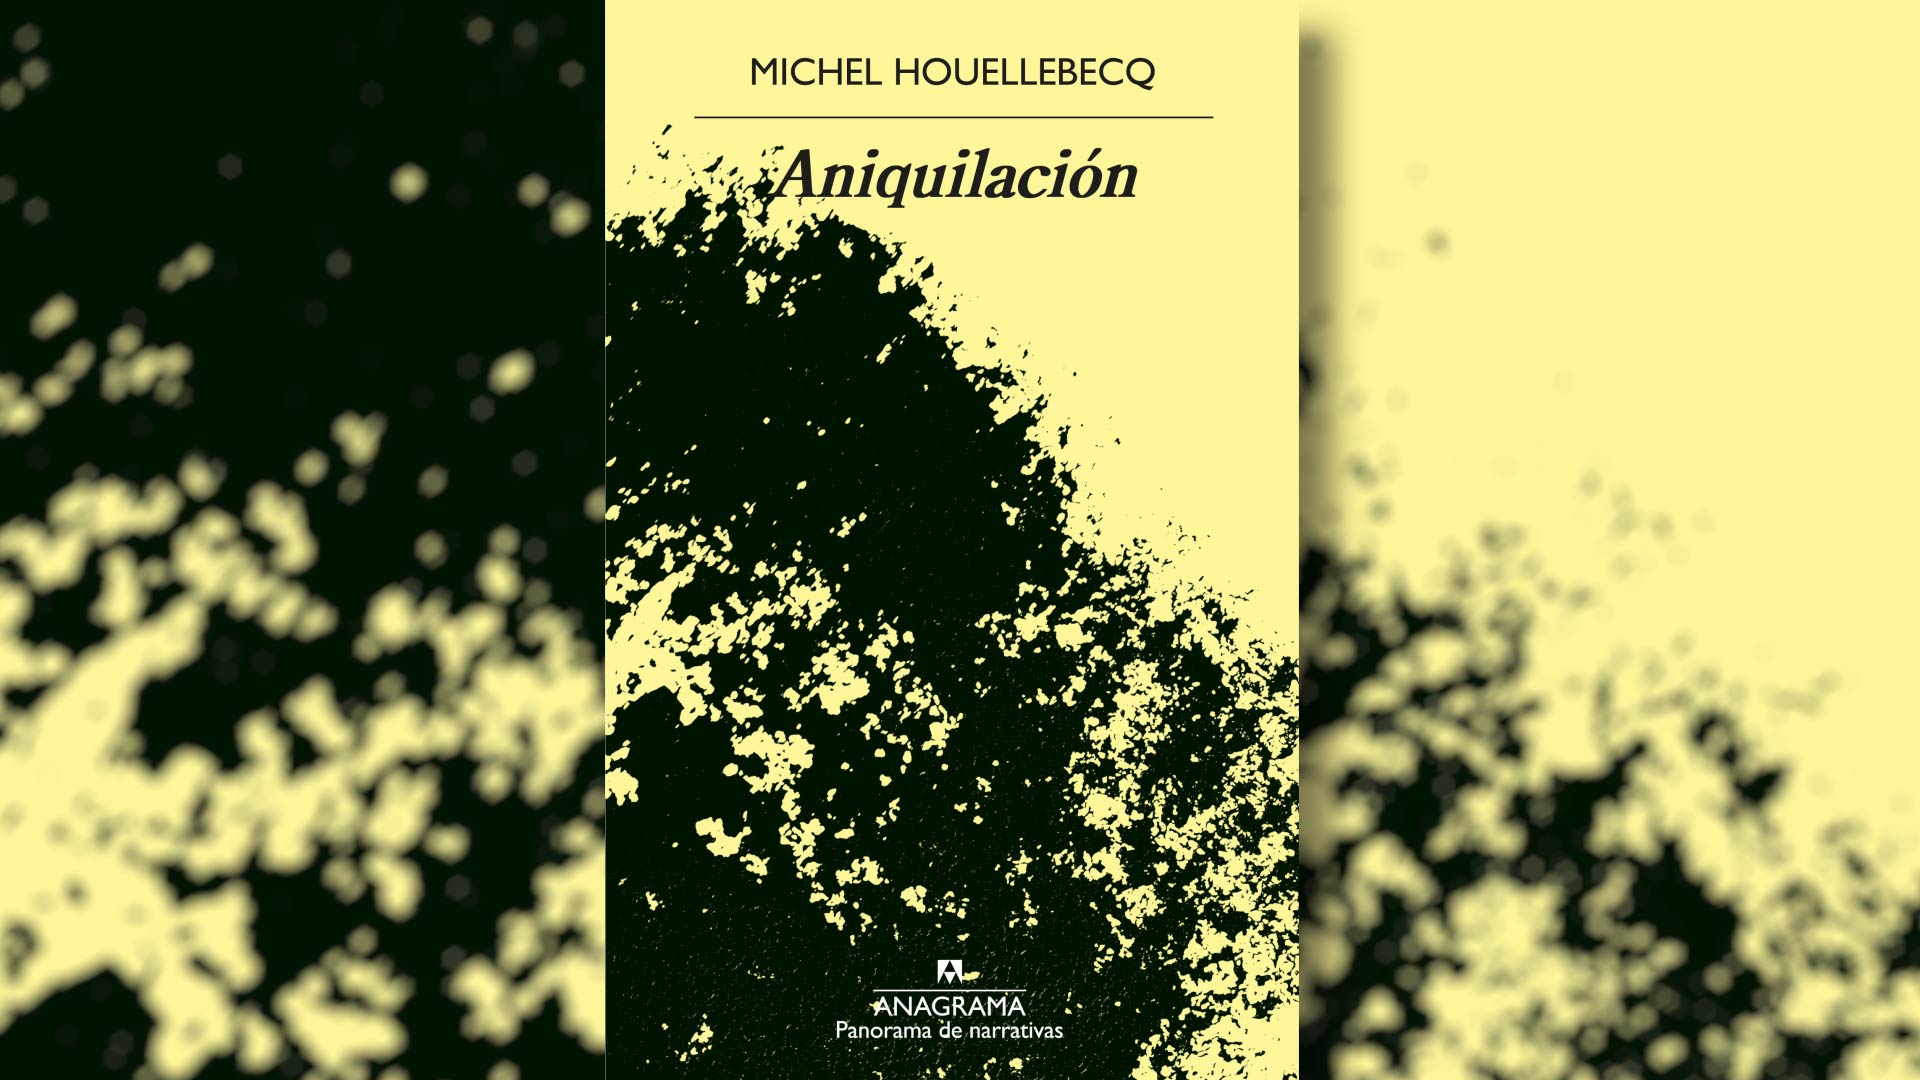 Cómo leer hoy “Aniquilación”, el nuevo libro de Michel Houellebecq, que llega a las librerías en julio - Infobae